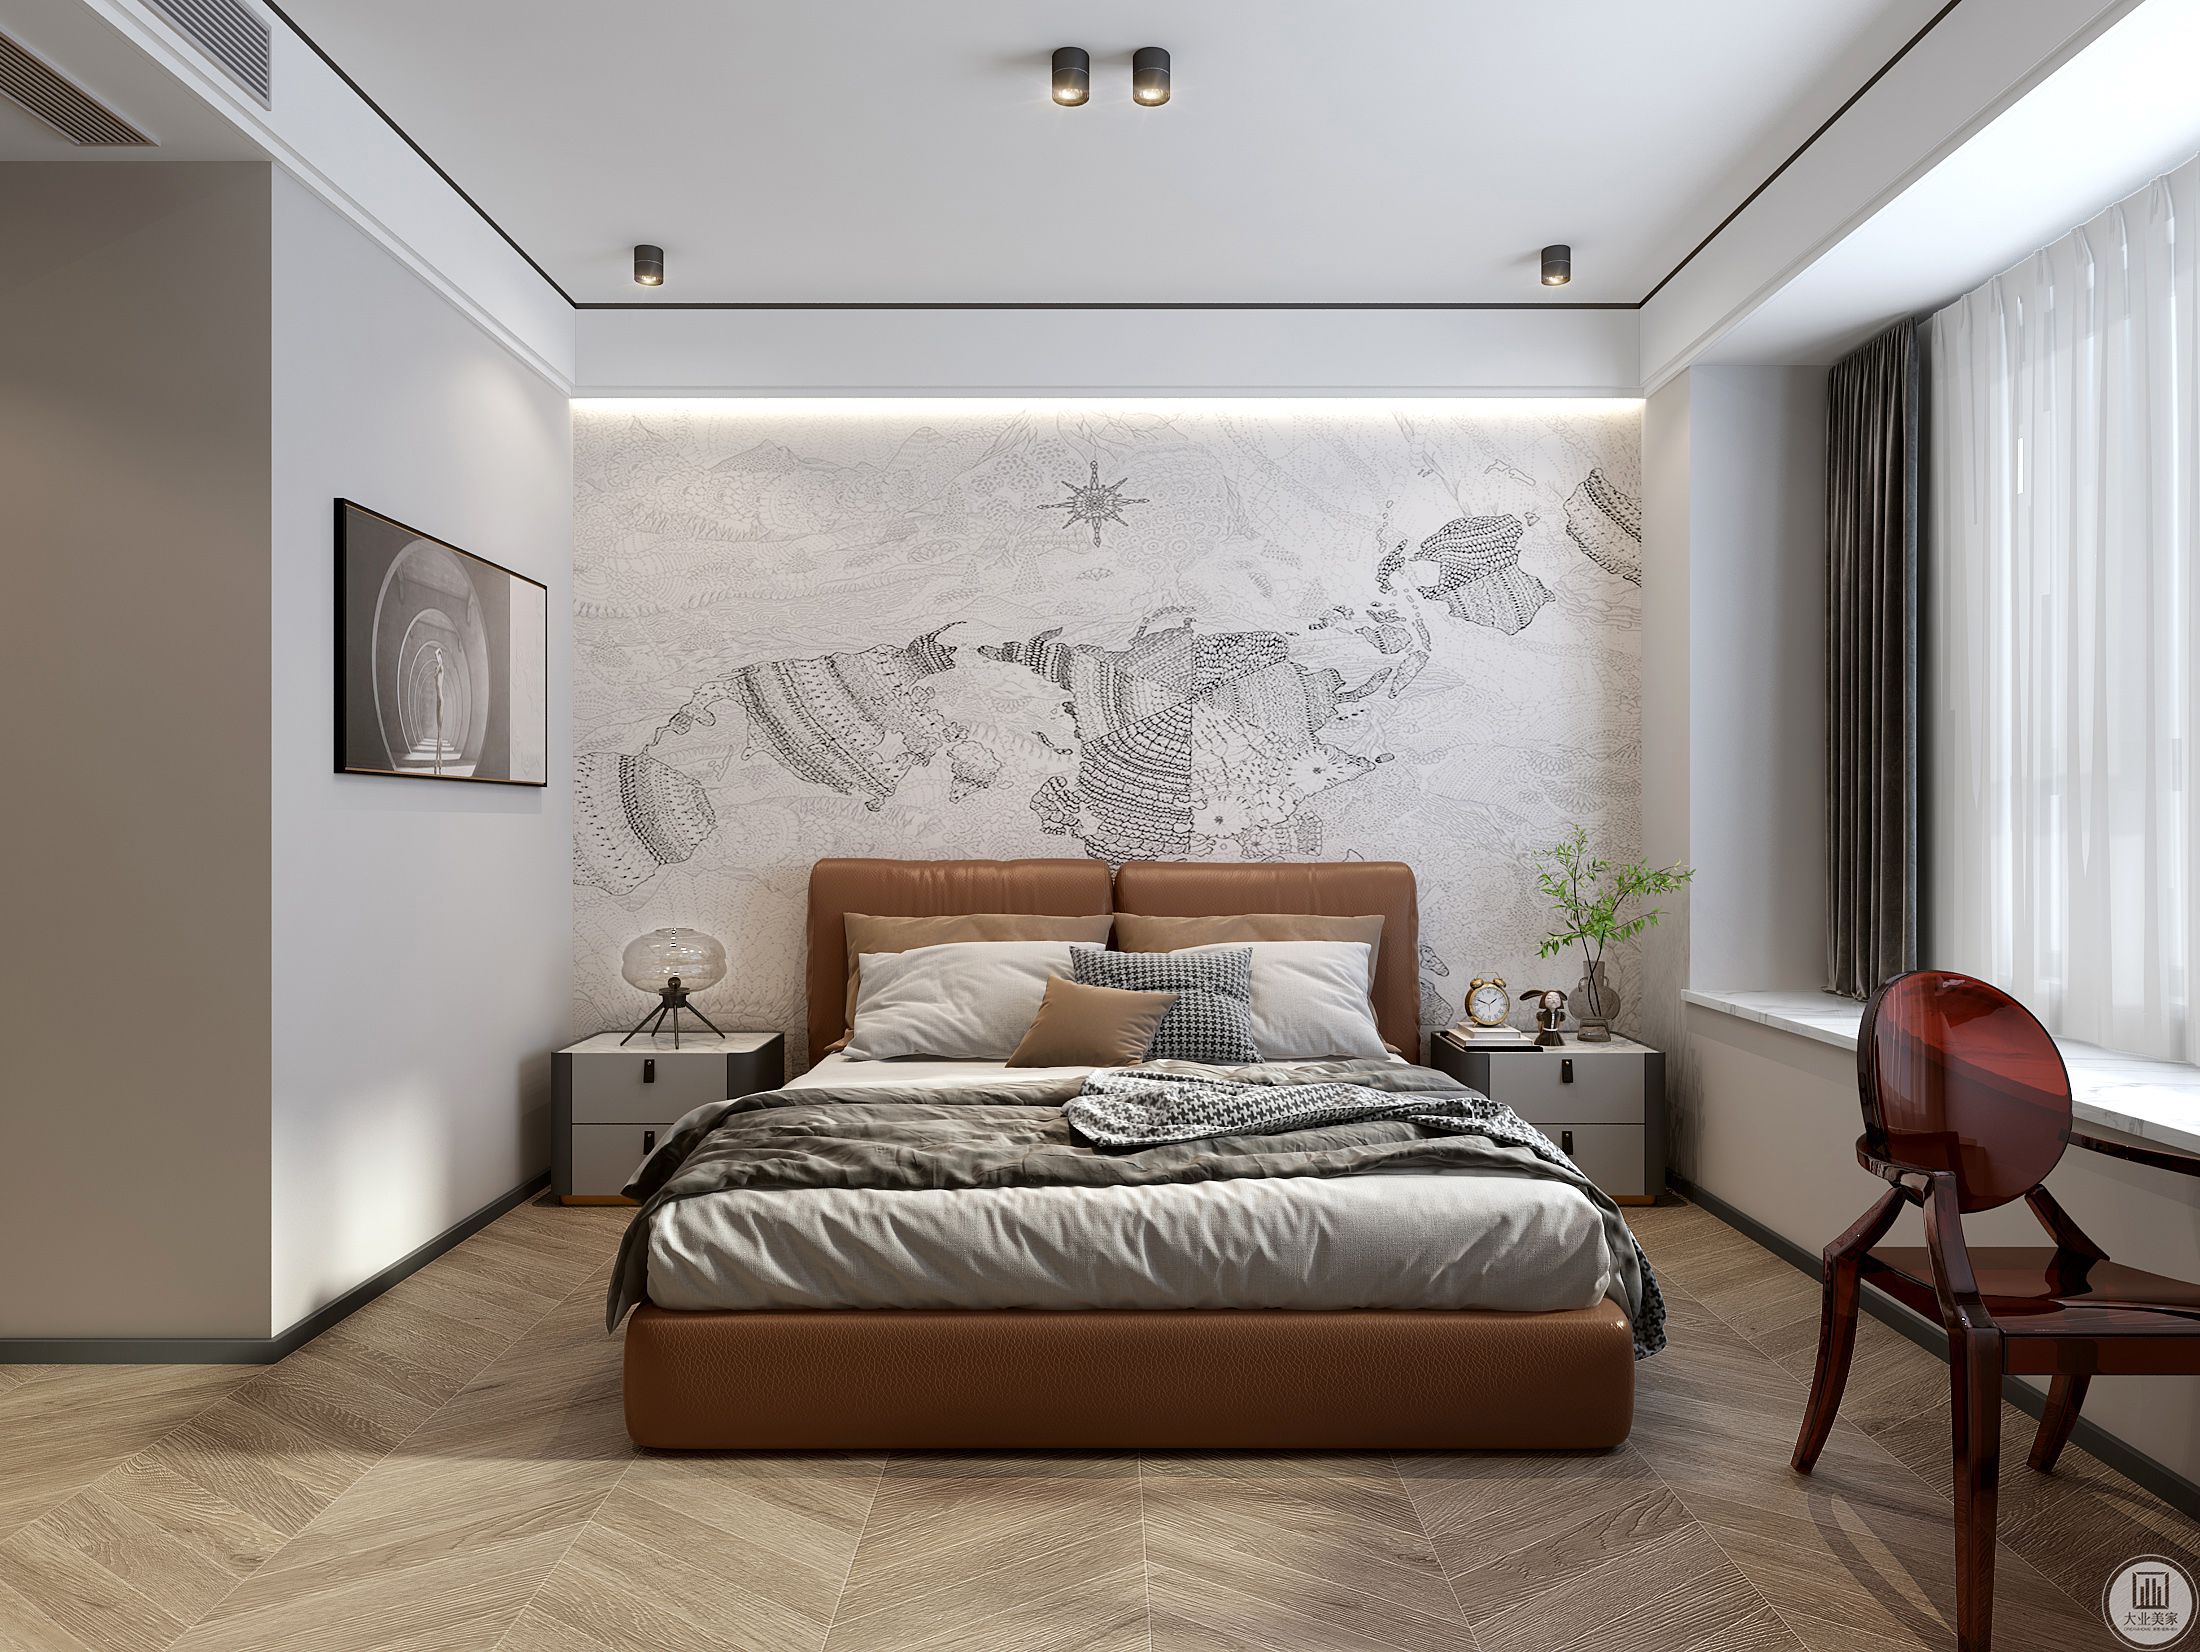 主卧的家具偏意式，背景墙采用了壁画，增加整体层次感。洗墙灯结合壁画为空间增加柔美感，精致简约。